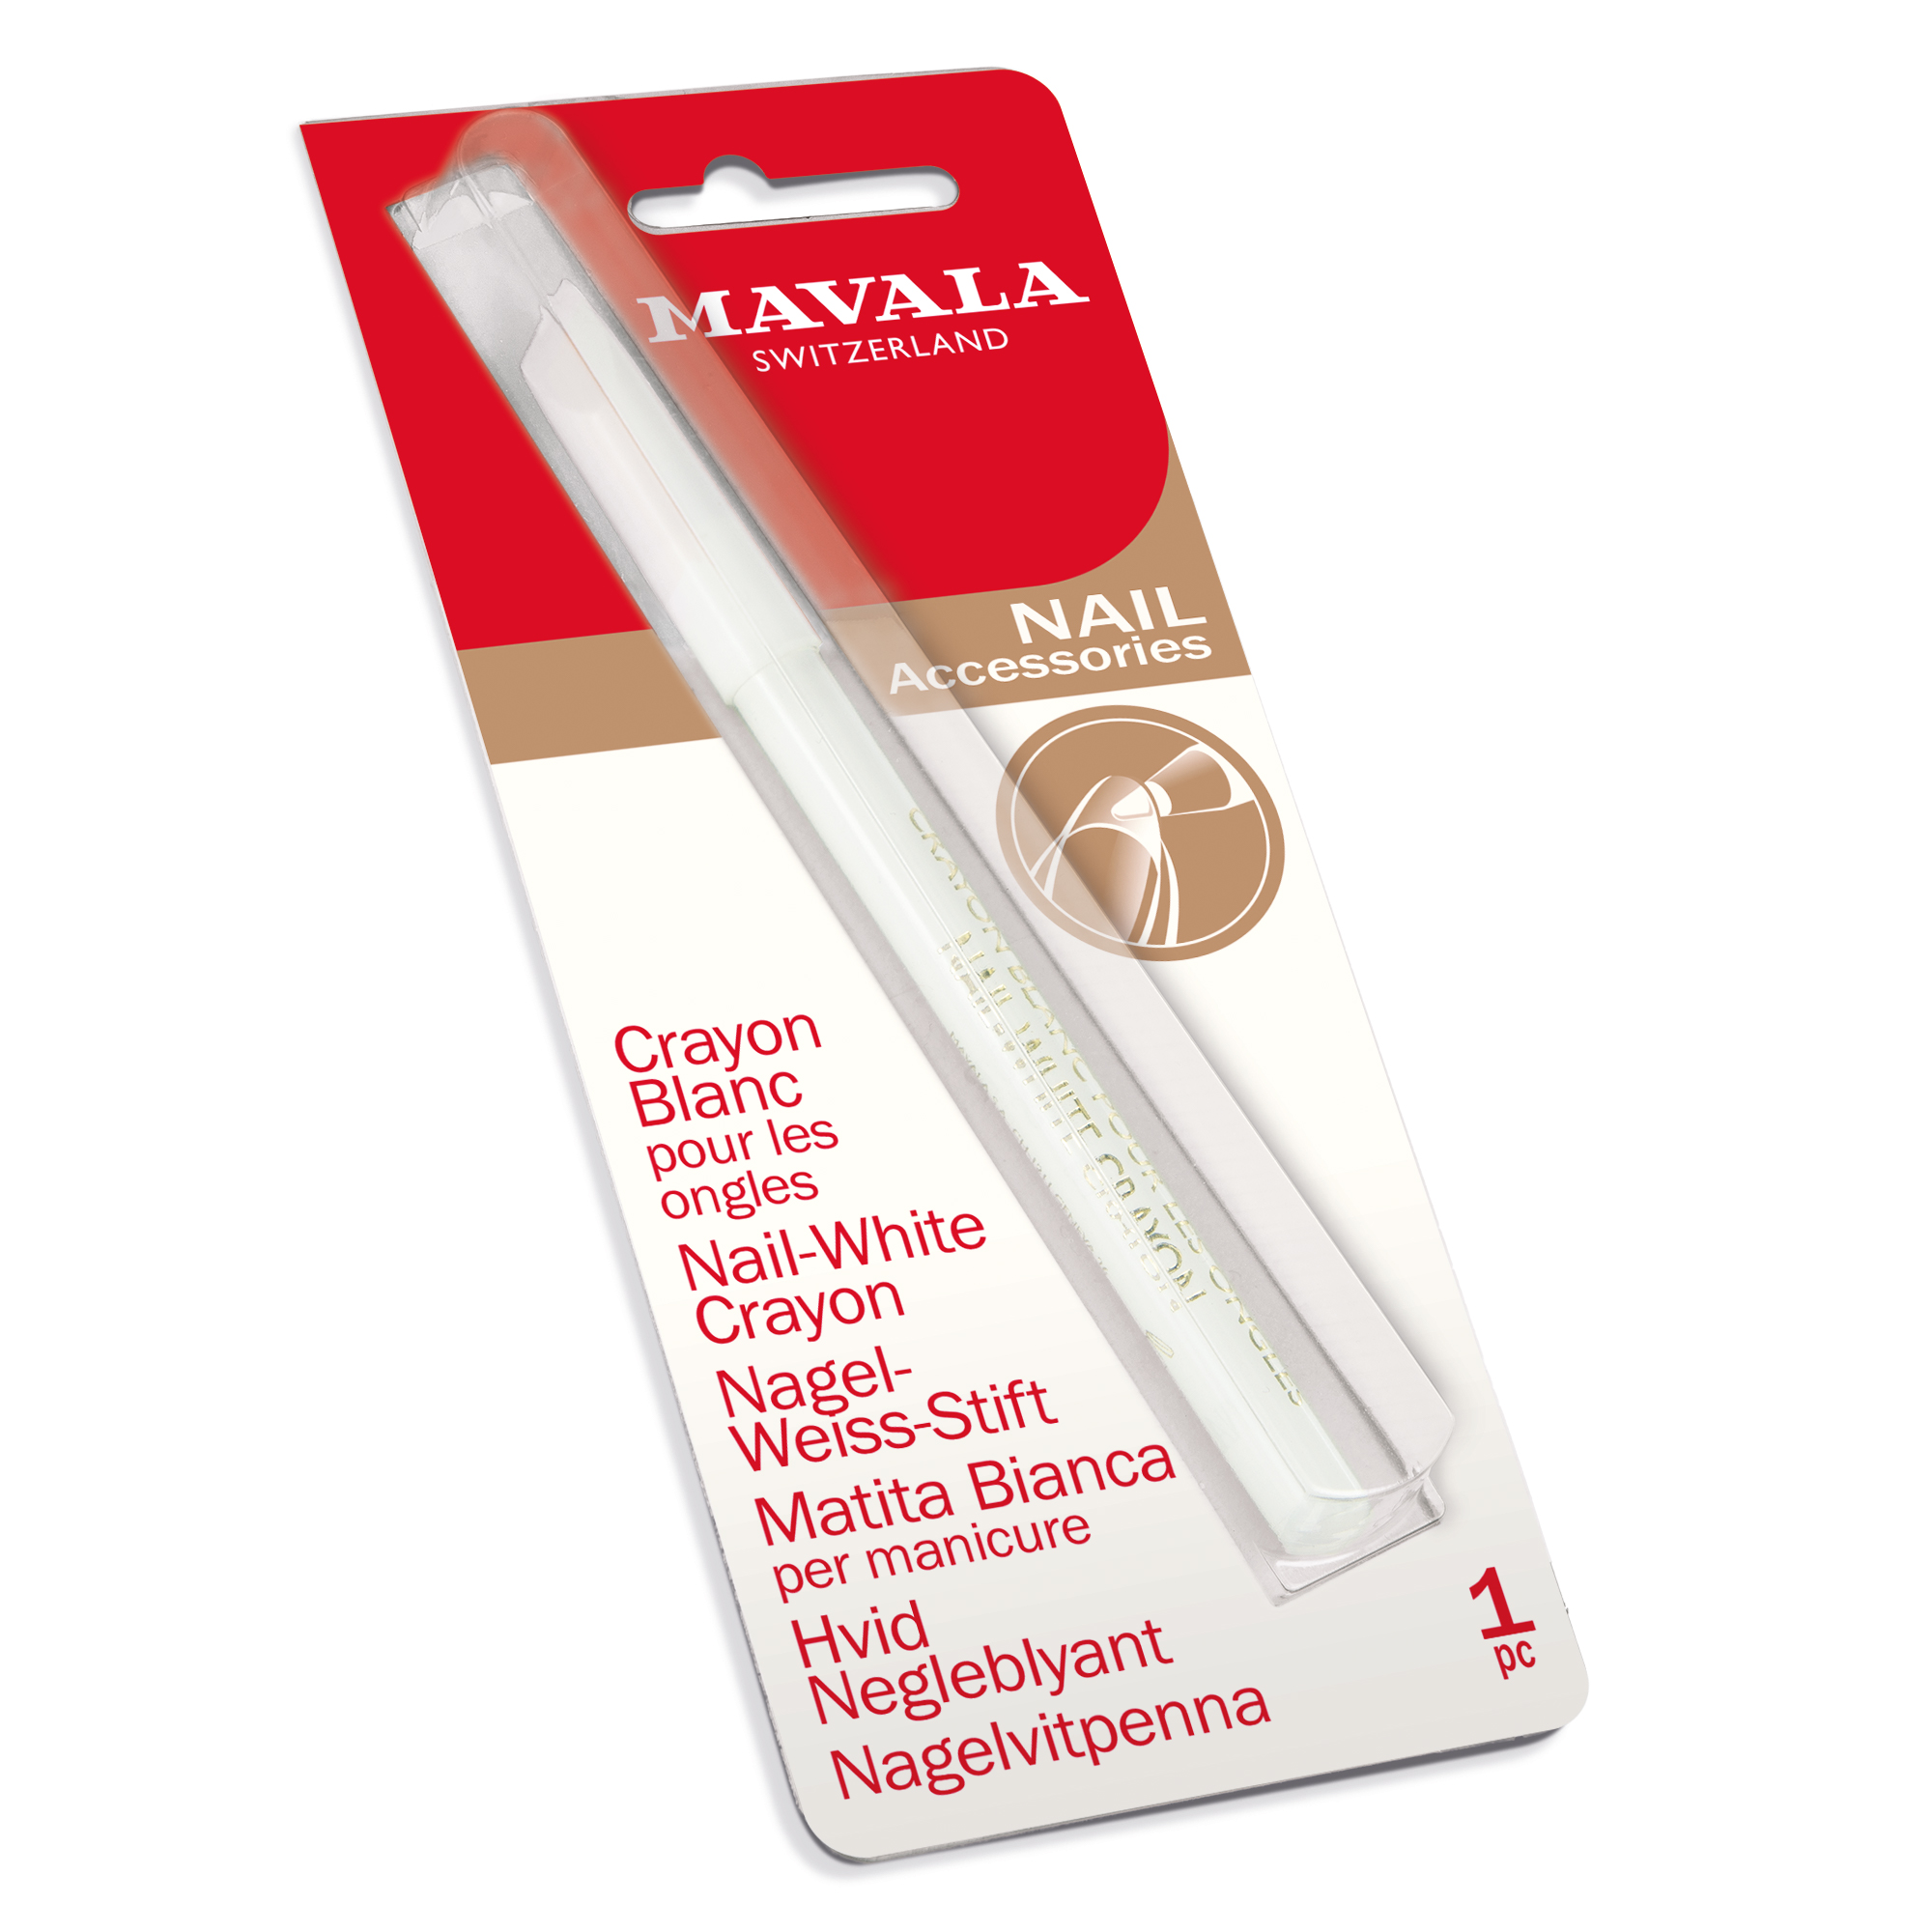 Nagel-Weiß-Stift -  Für saubere und gepflegte Nägel.  -  Vegan